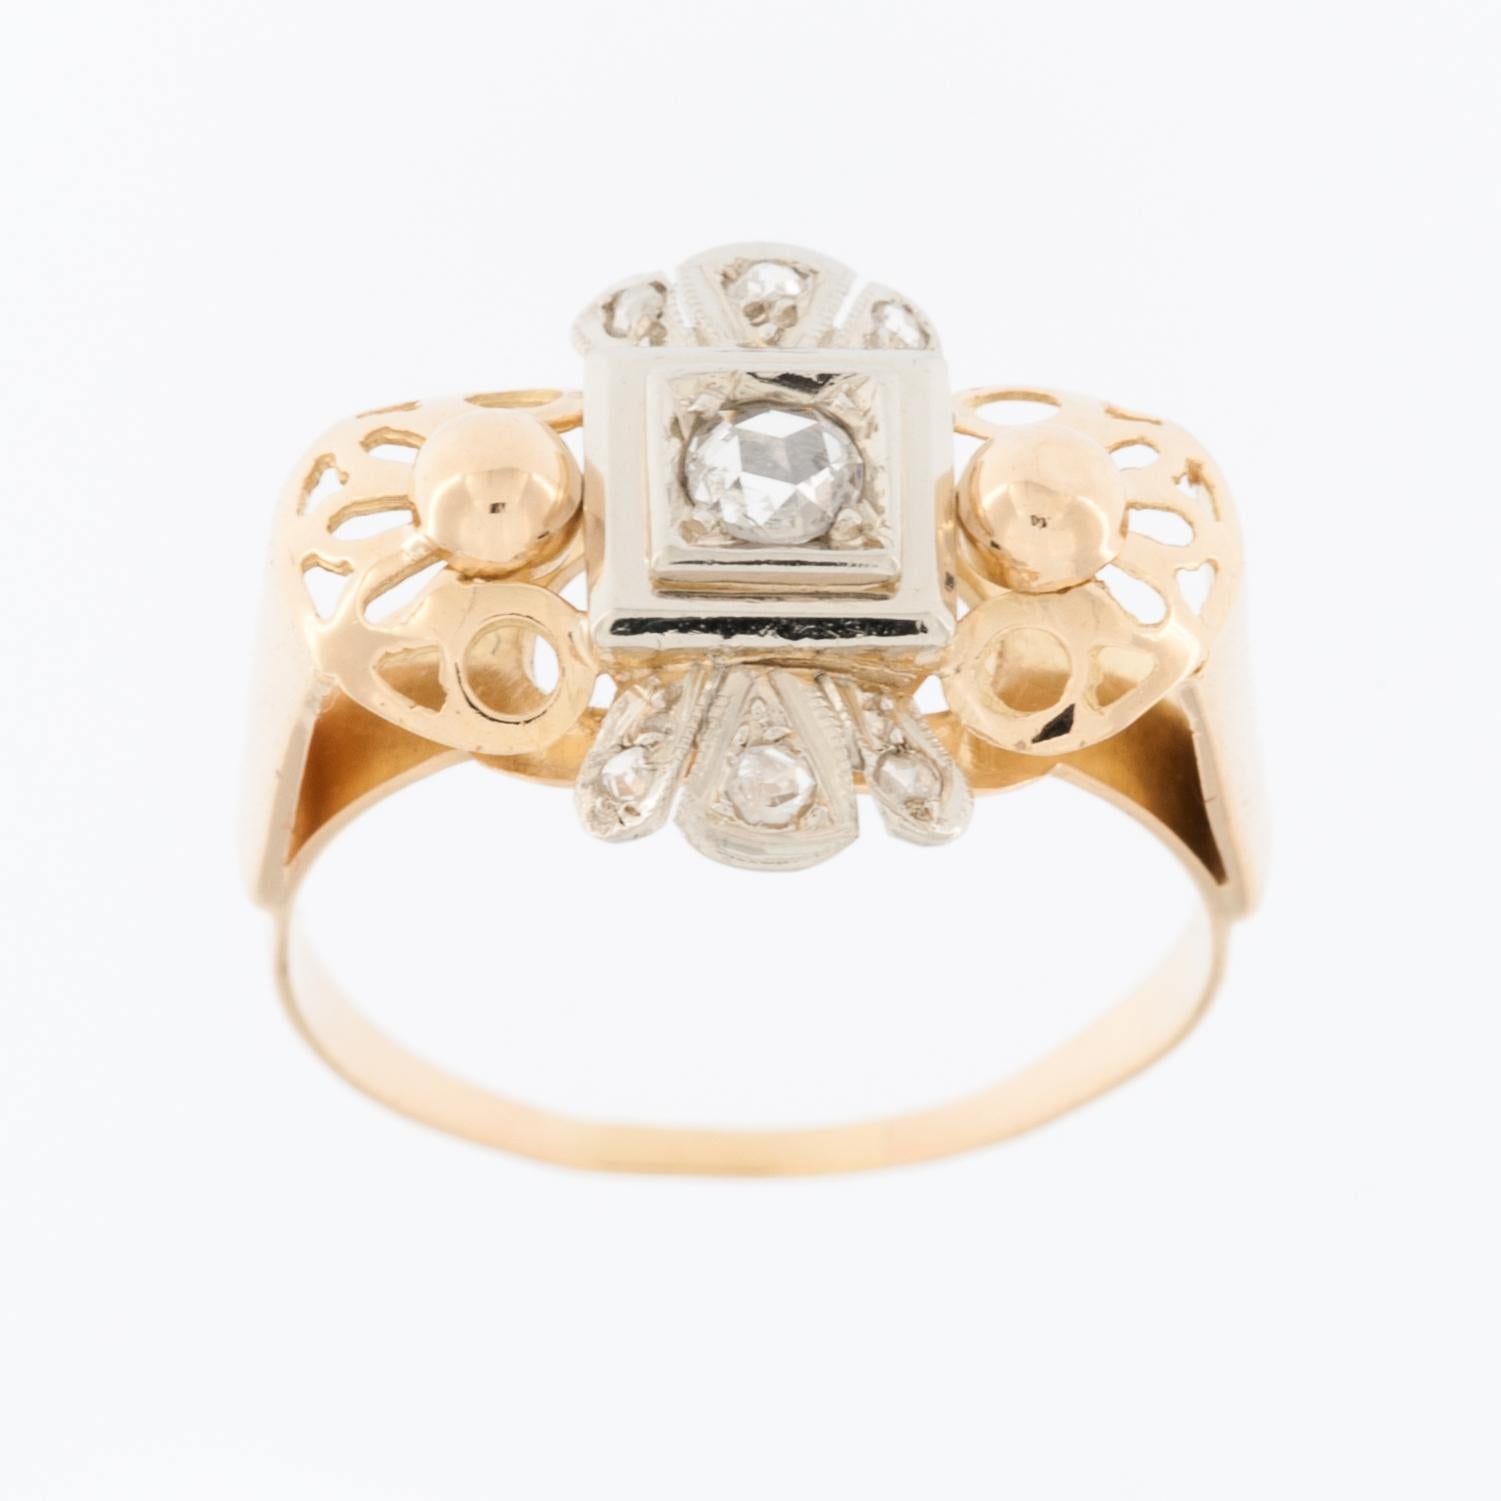 Der Art-Déco-Ring aus 18-karätigem Gelb- und Weißgold mit Diamanten ist ein atemberaubendes Schmuckstück, das die Eleganz und geometrische Ästhetik der Art-Déco-Bewegung widerspiegelt, die in den 1920er und 1930er Jahren ihre Blütezeit hatte.

Der